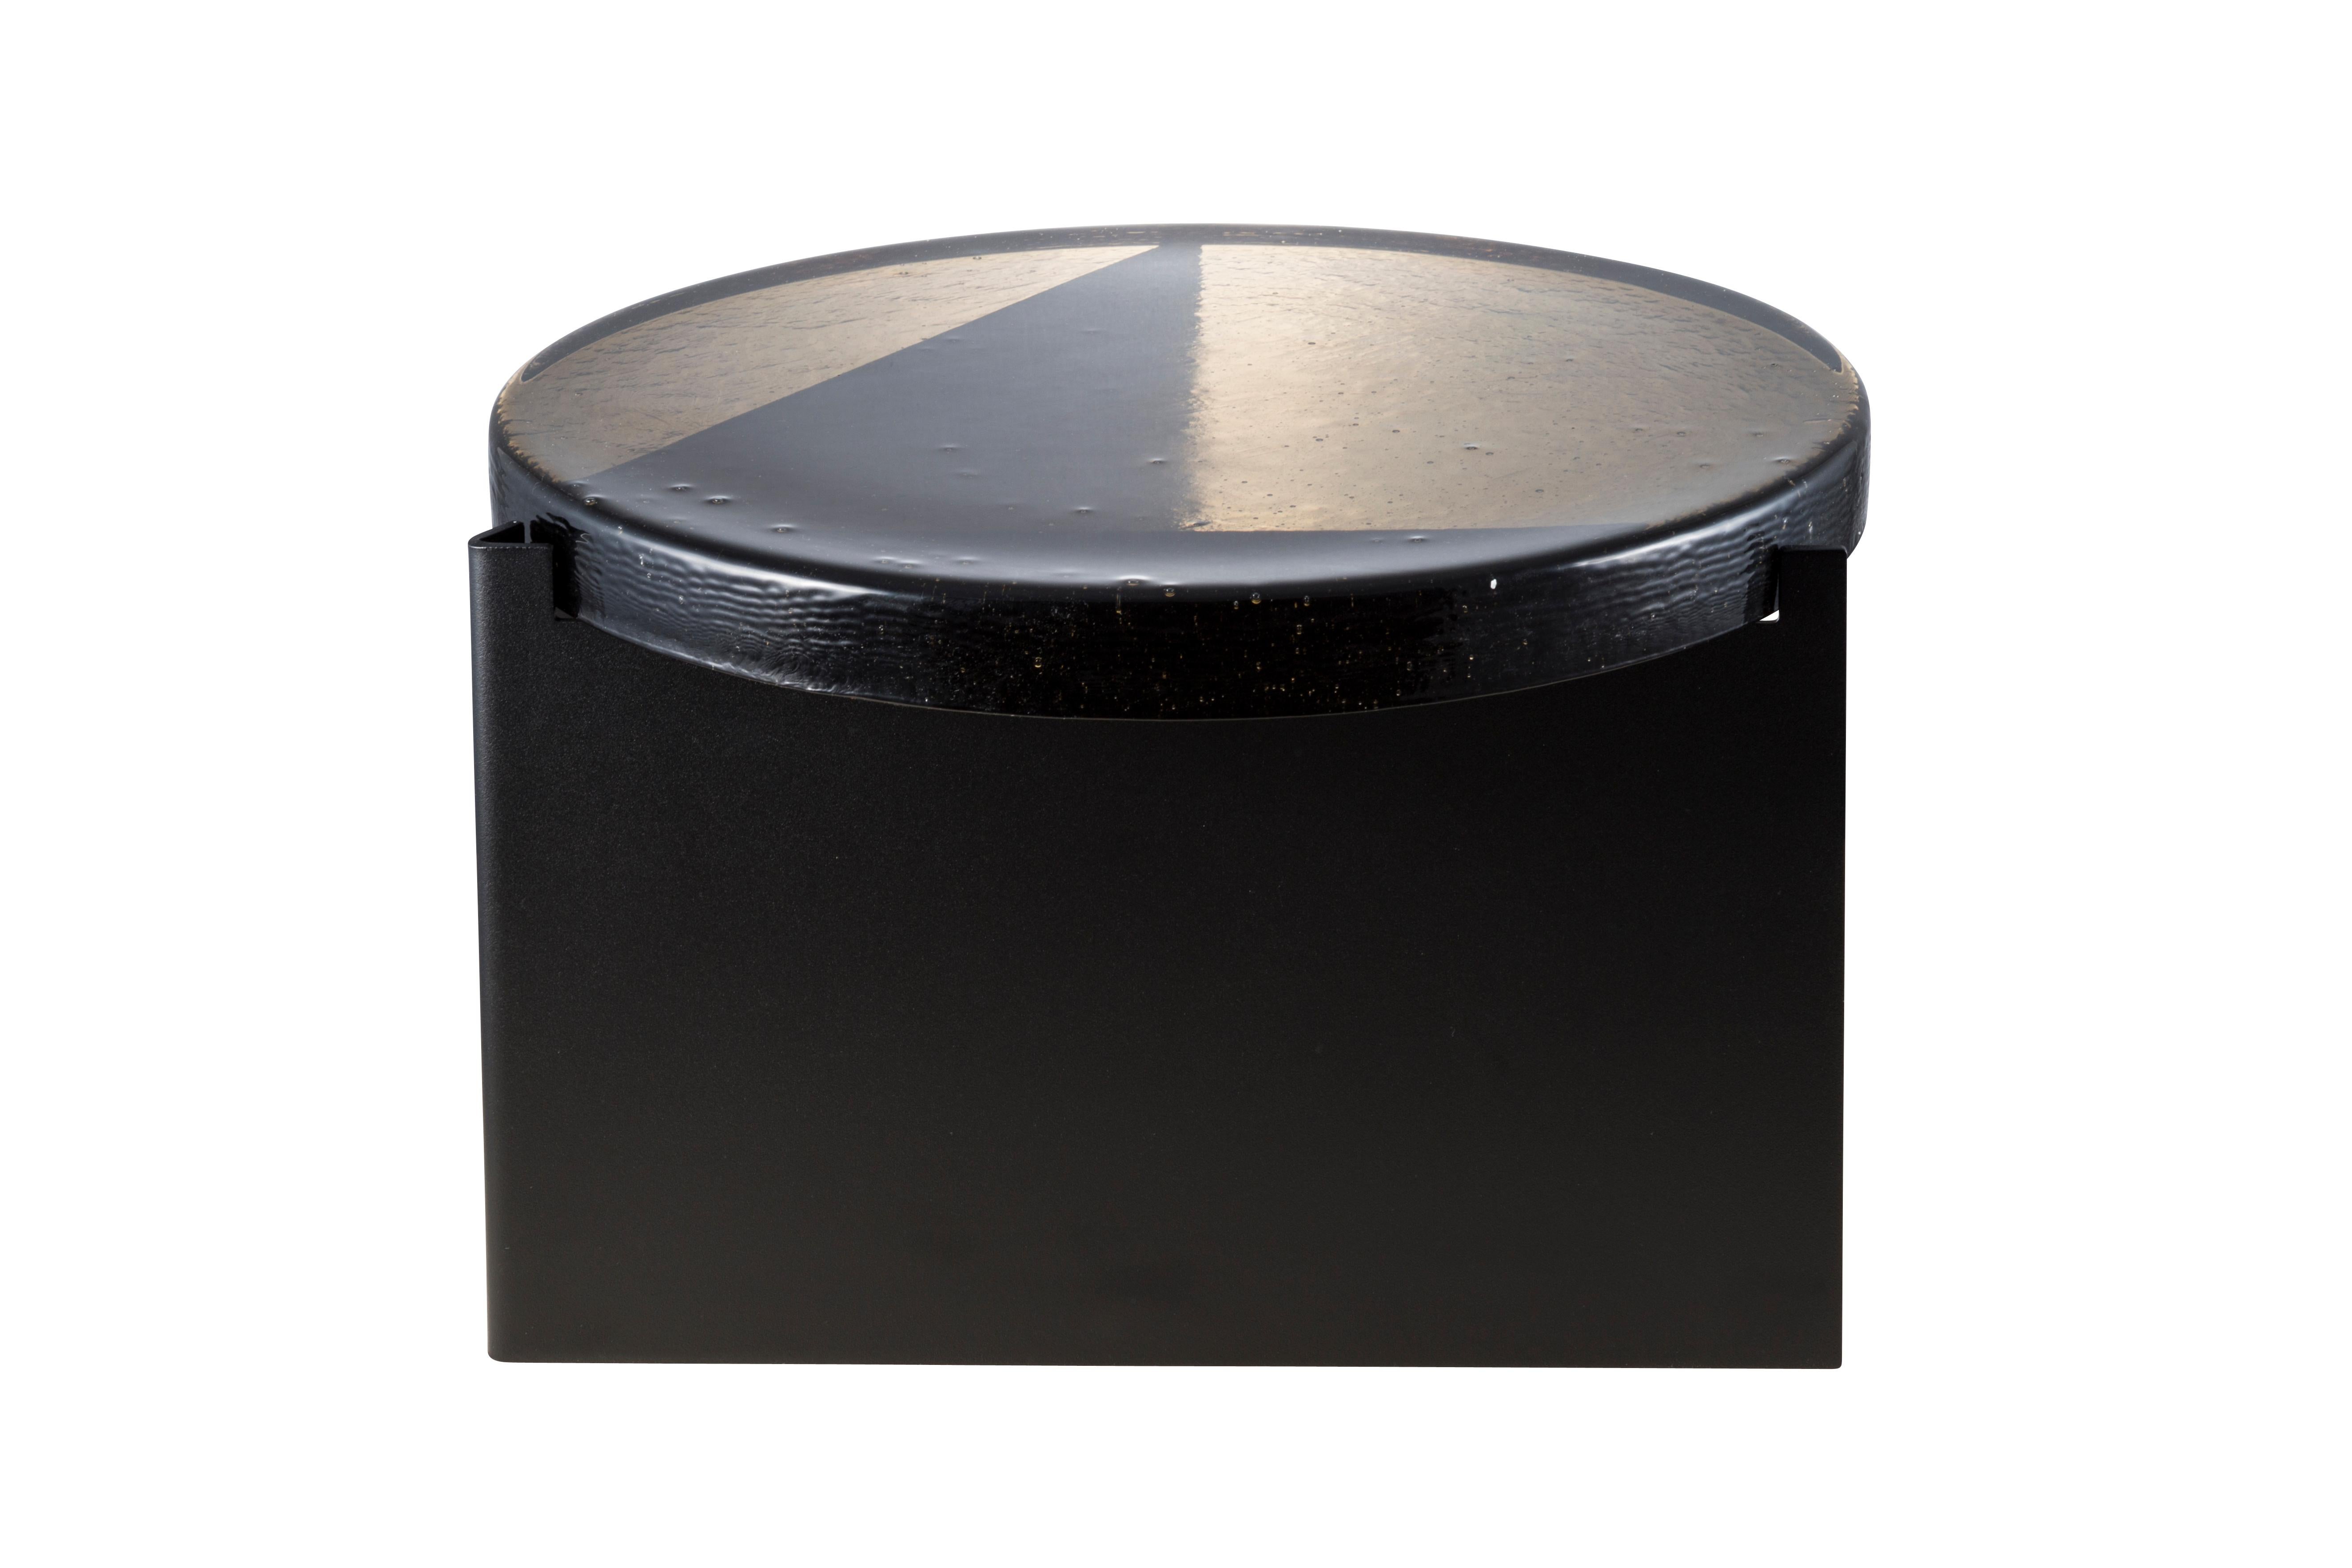 Table basse Alwa one big smoky grey black par Pulpo.
Dimensions : D56 x H35 cm.
Coates : verre moulé ; acier peint par poudrage.

Disponible également en différentes finitions. 

Normalement, le verre est considéré comme un matériau léger aux arêtes